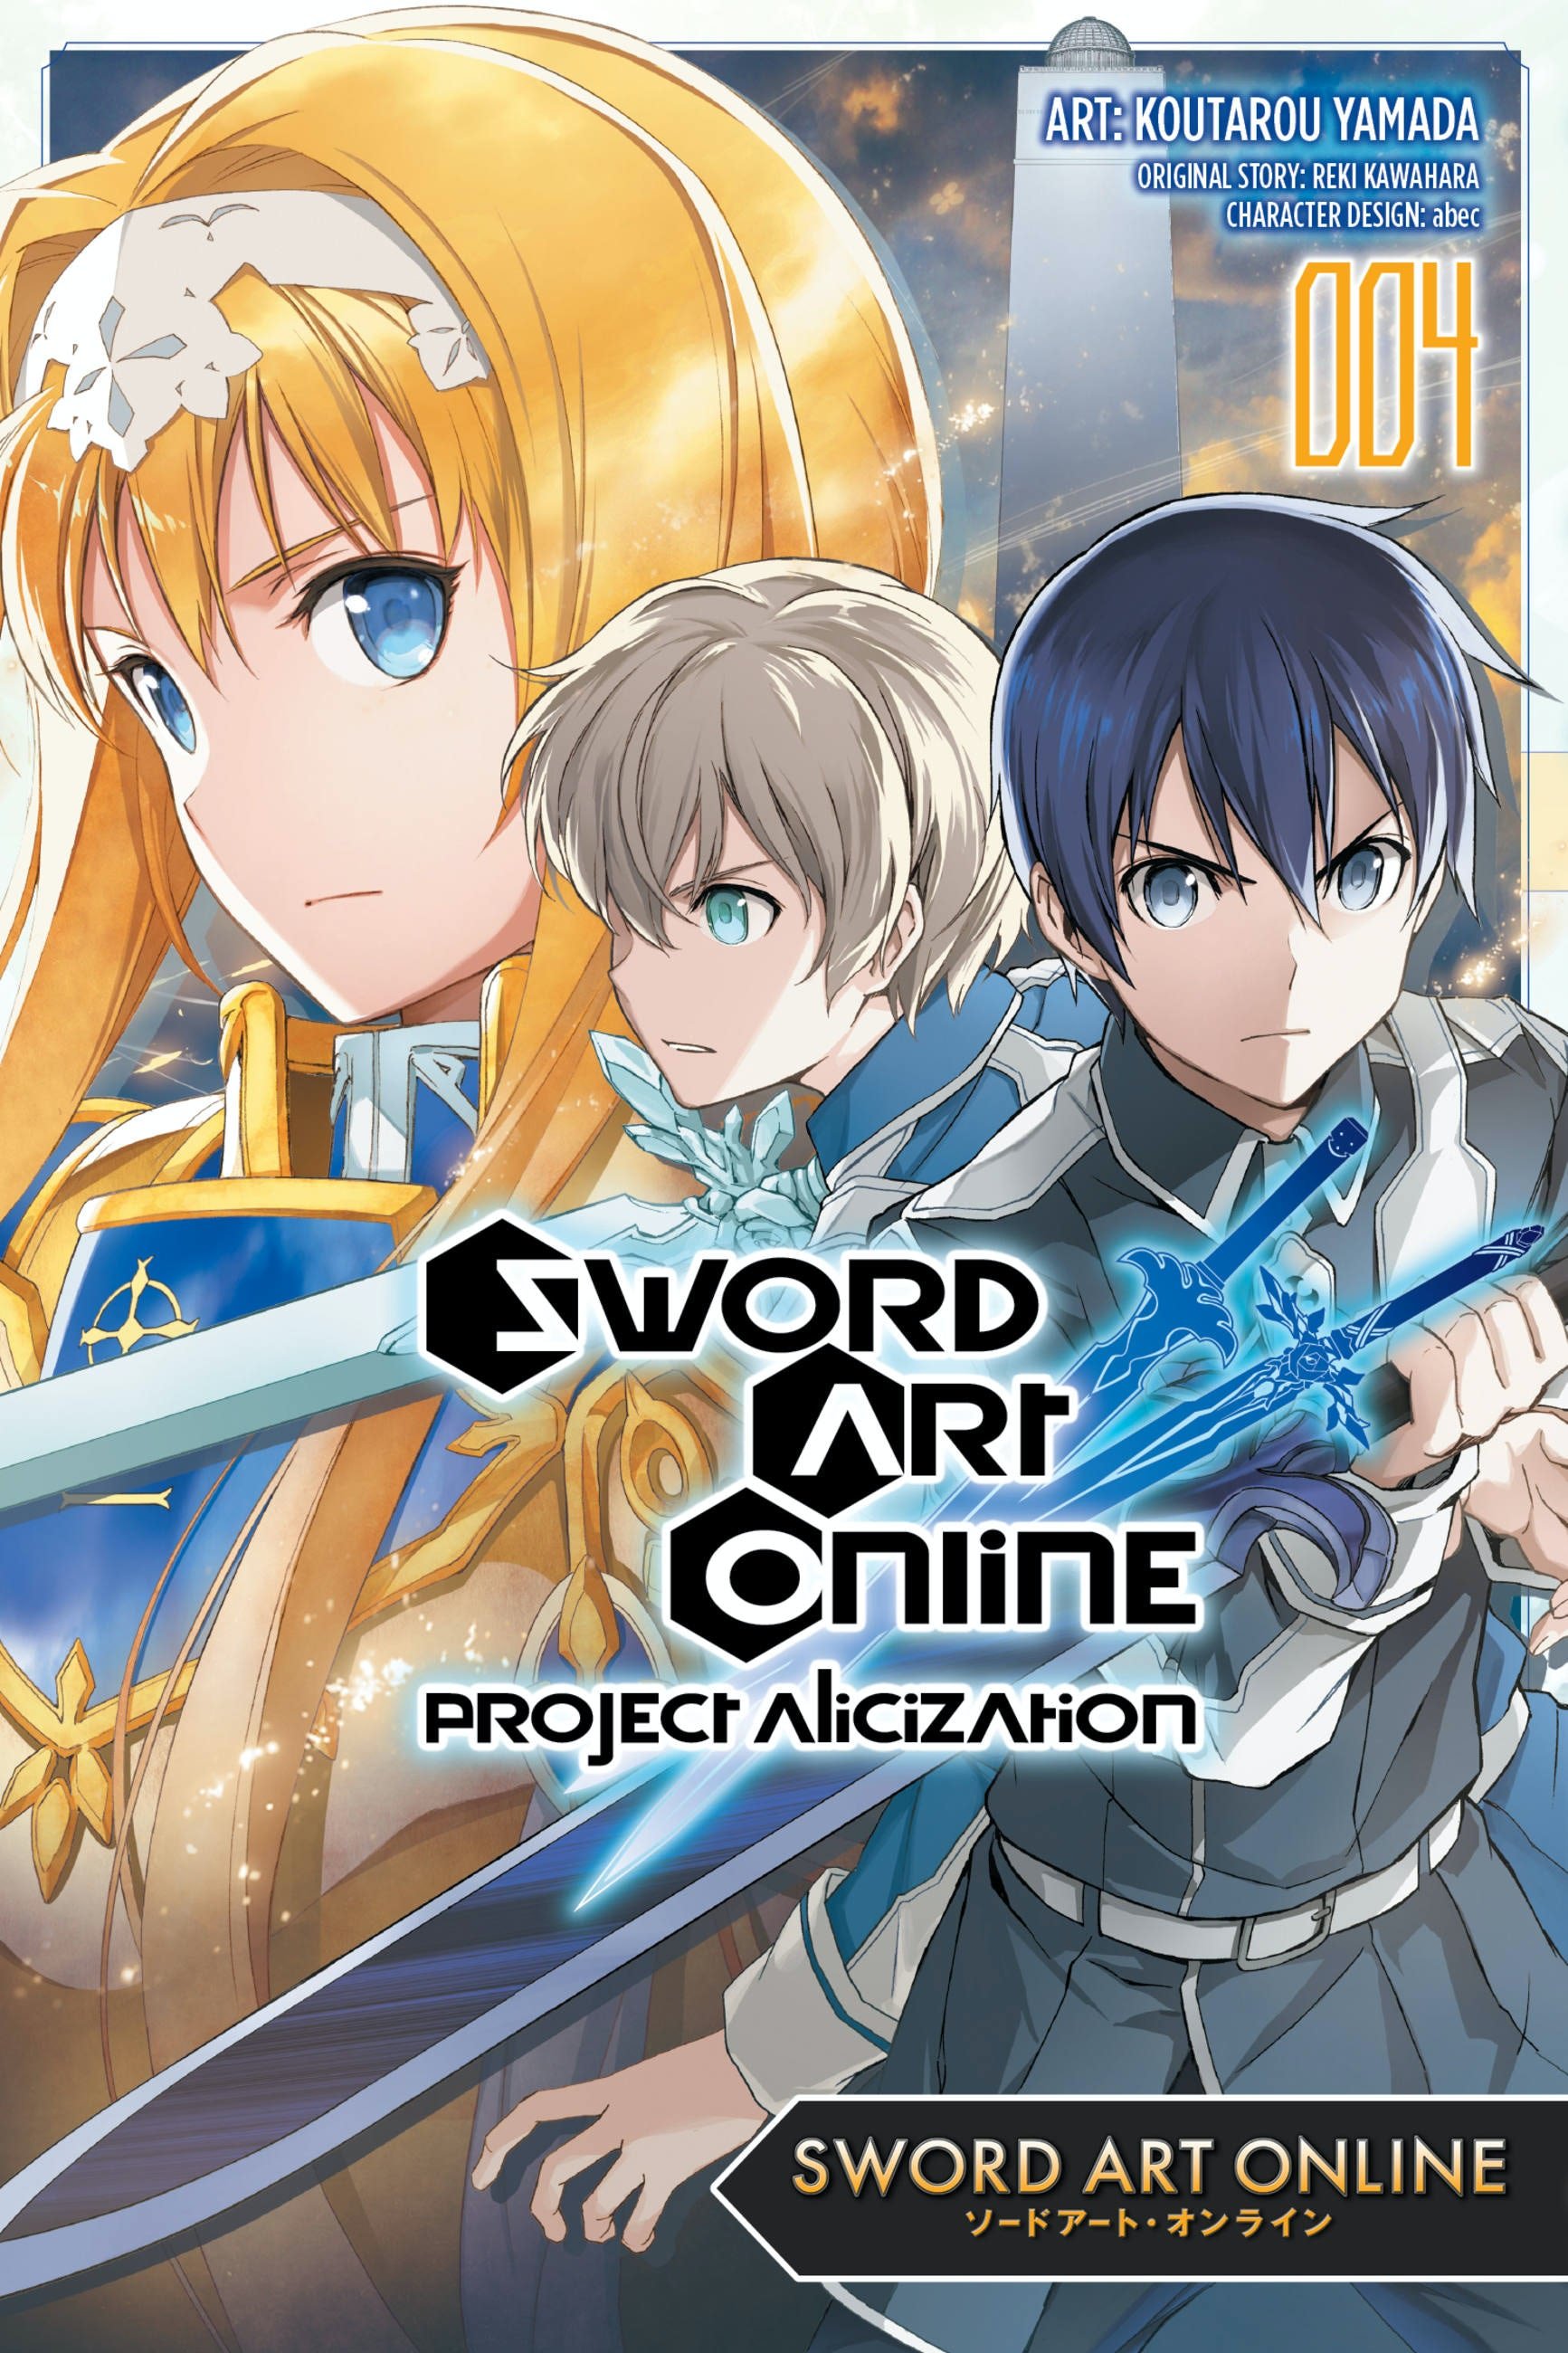 Sword Art Online, Vol. 11